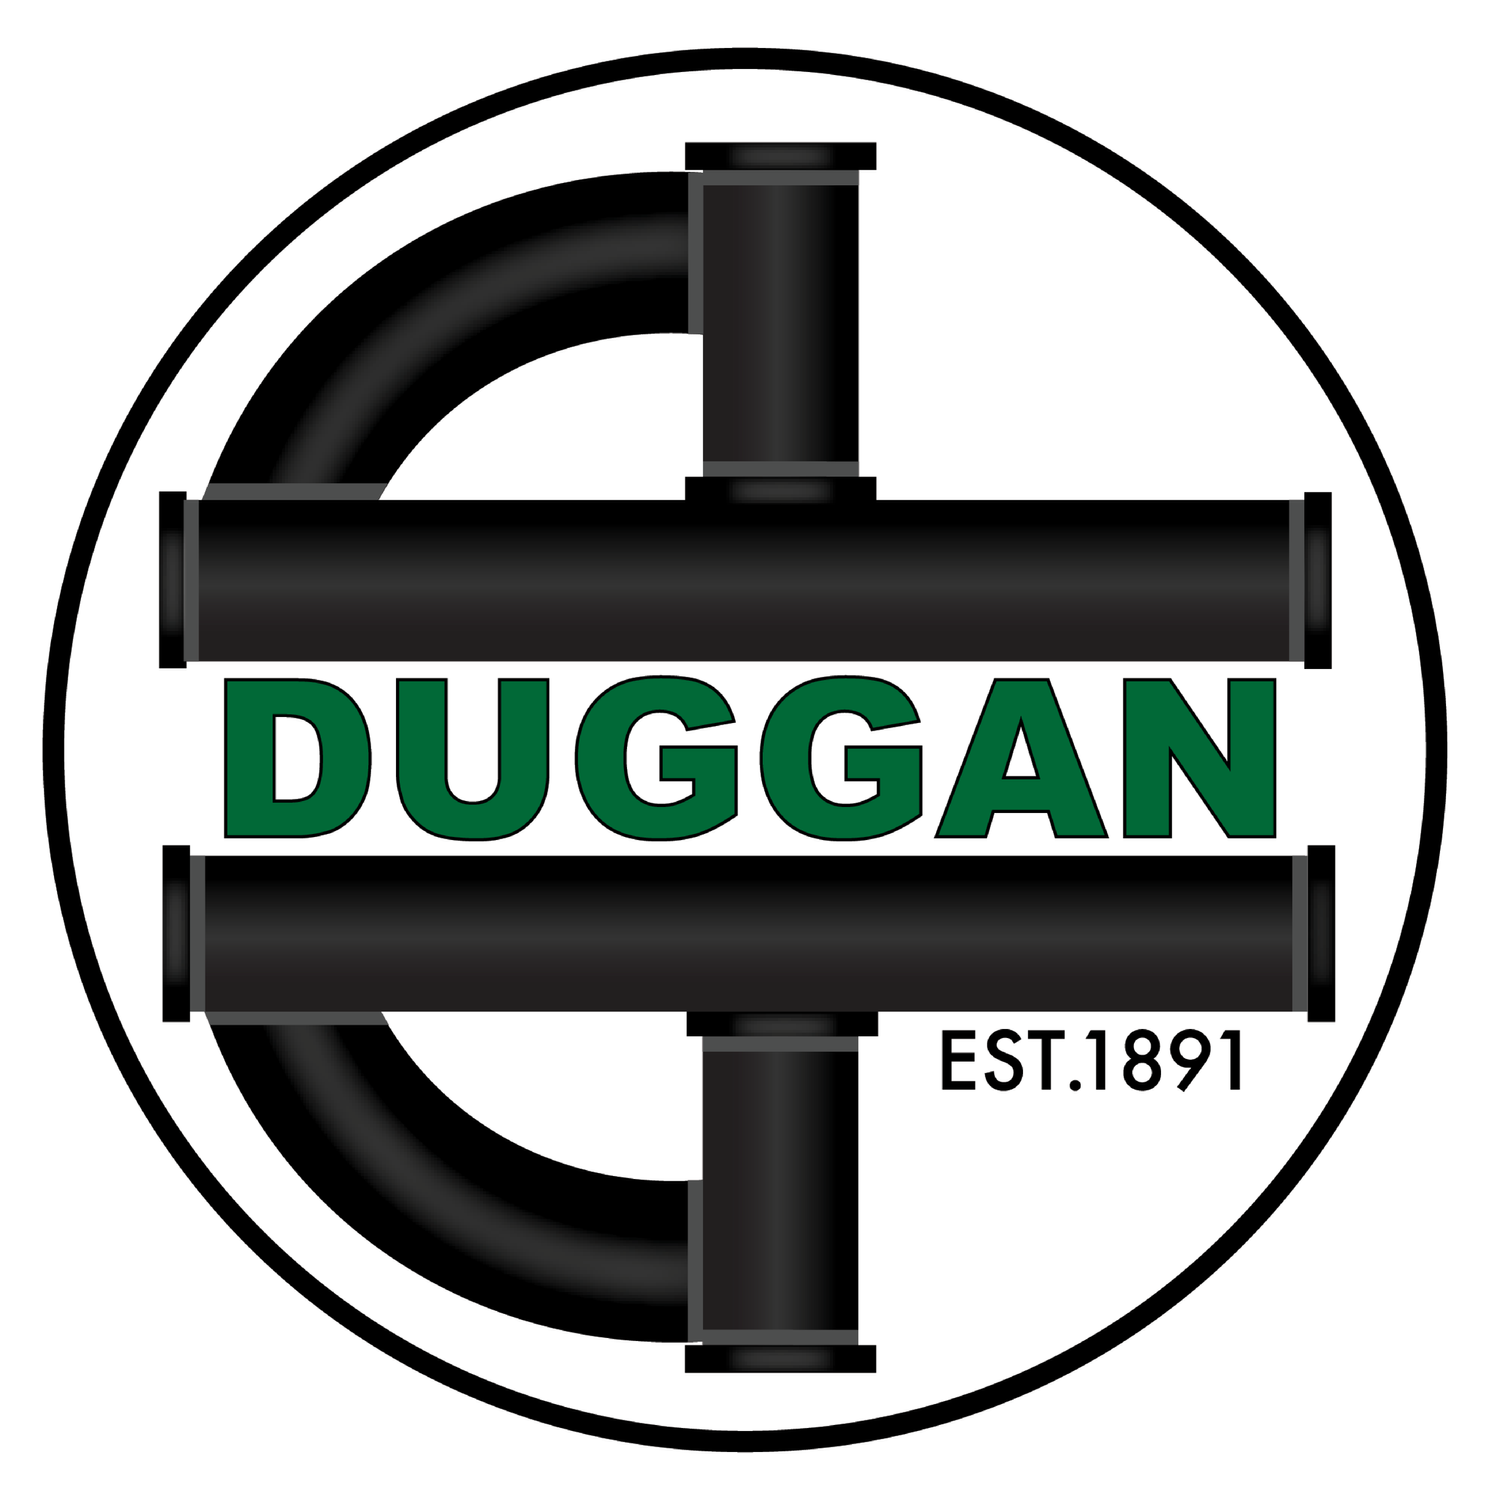 E.M. Duggan